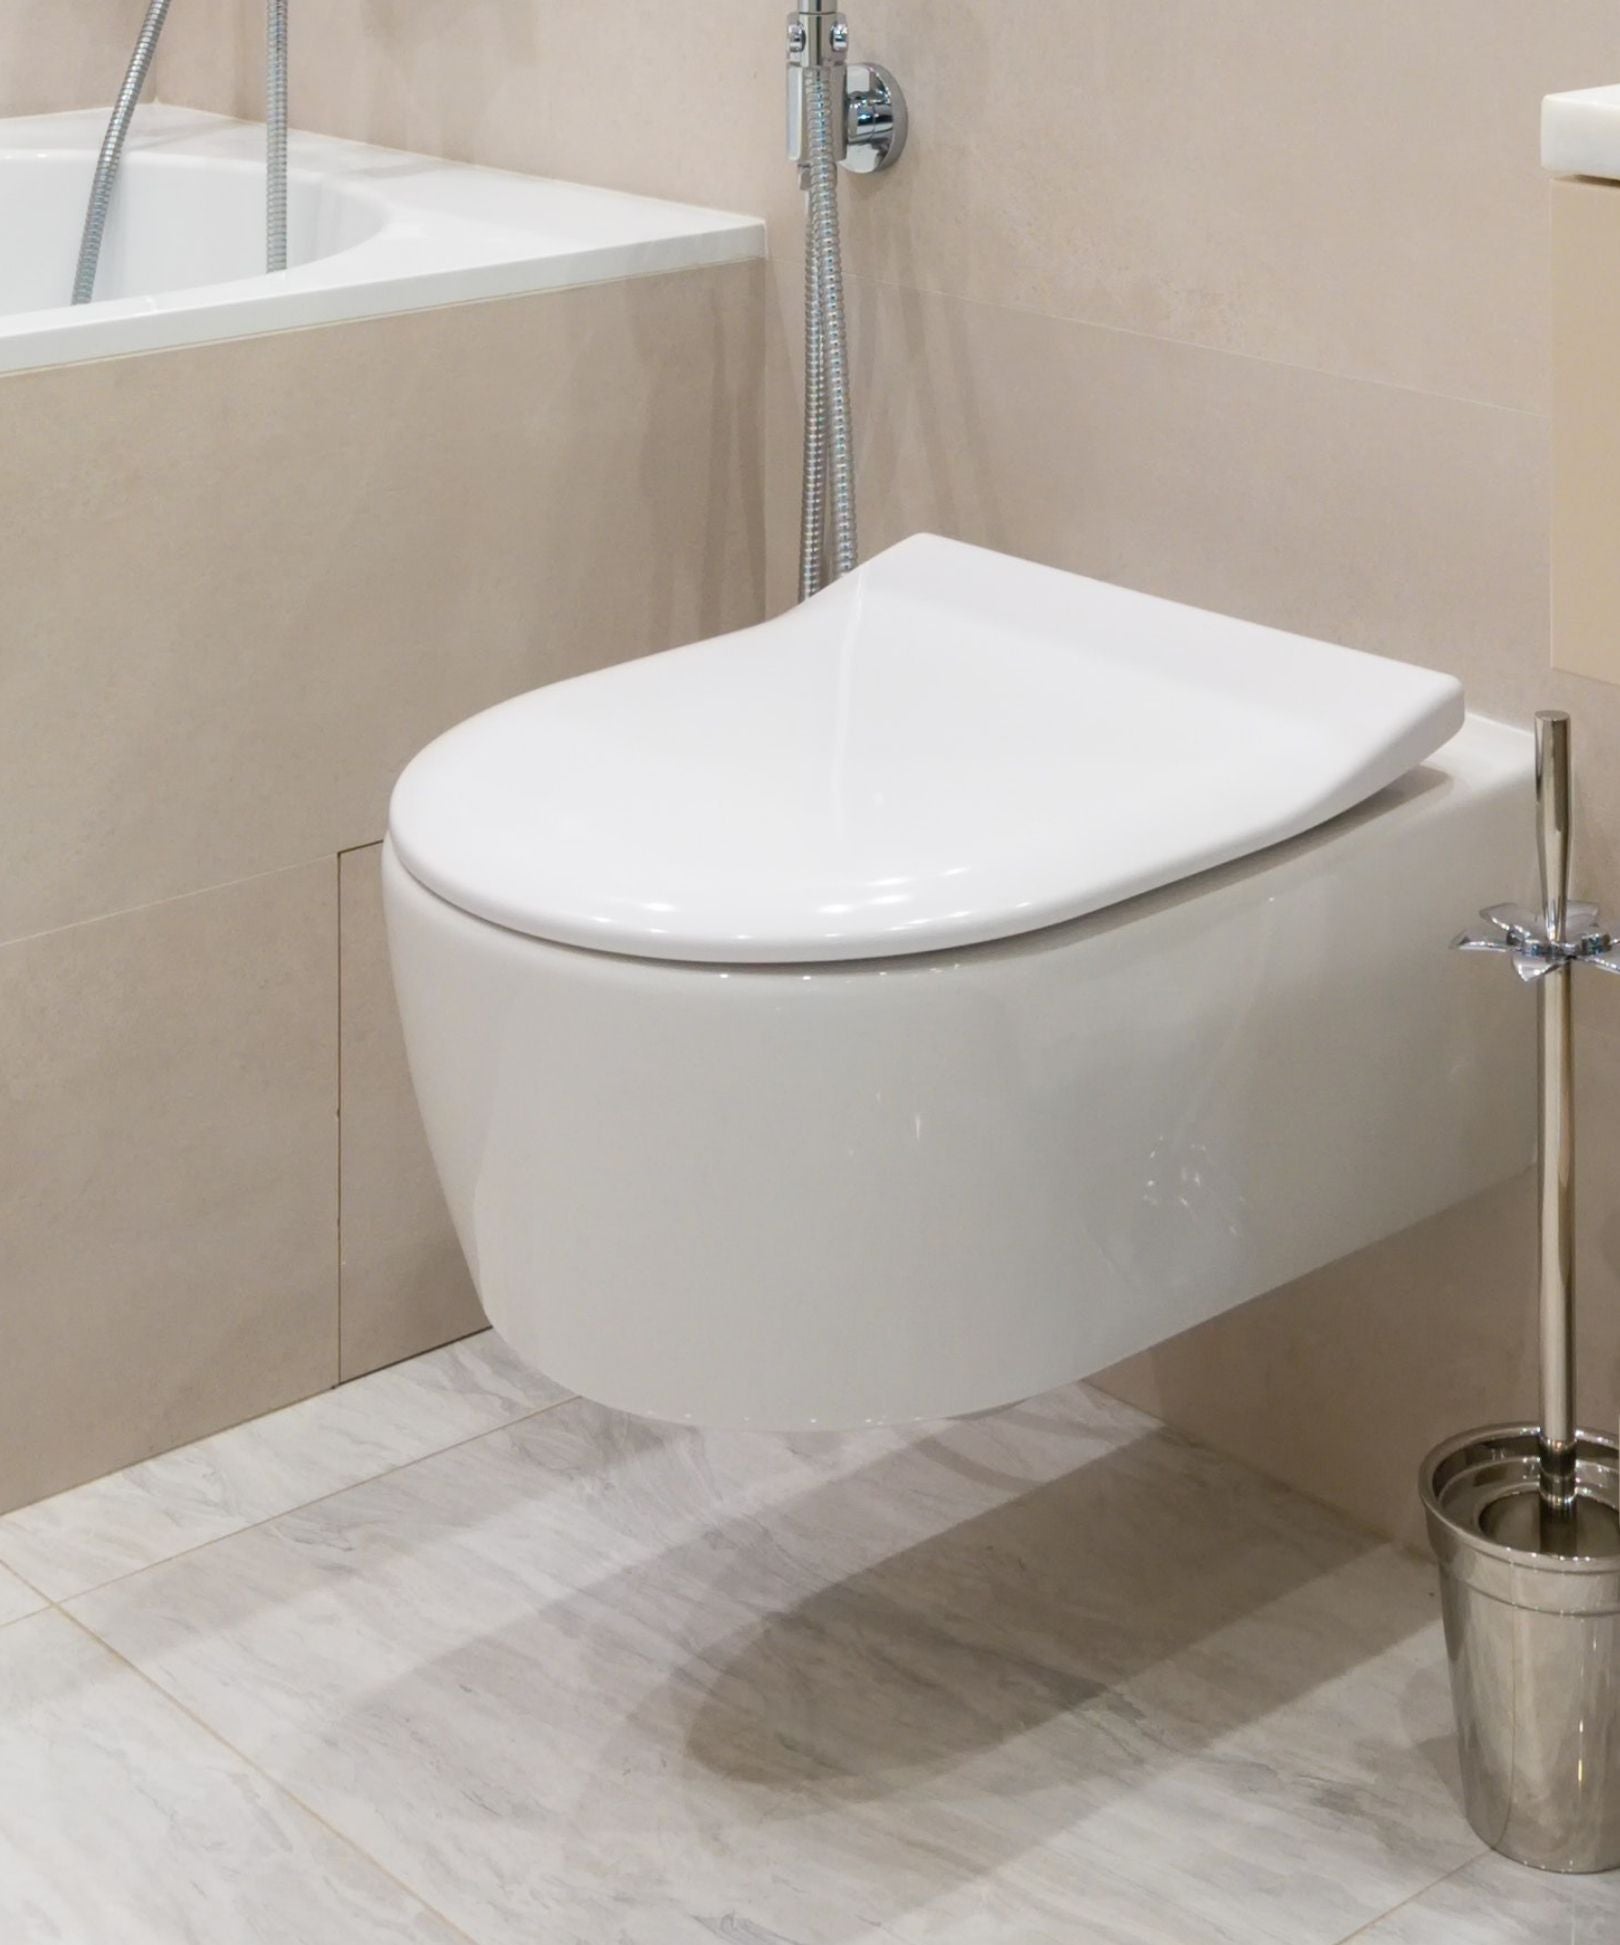 Les toilettes suspendues sont de plus en plus populaires en ce moment, et  l'aspect « flottant » unique qu'elles donnent est un excellent moyen de  rendre votre salle de bains plus originale.